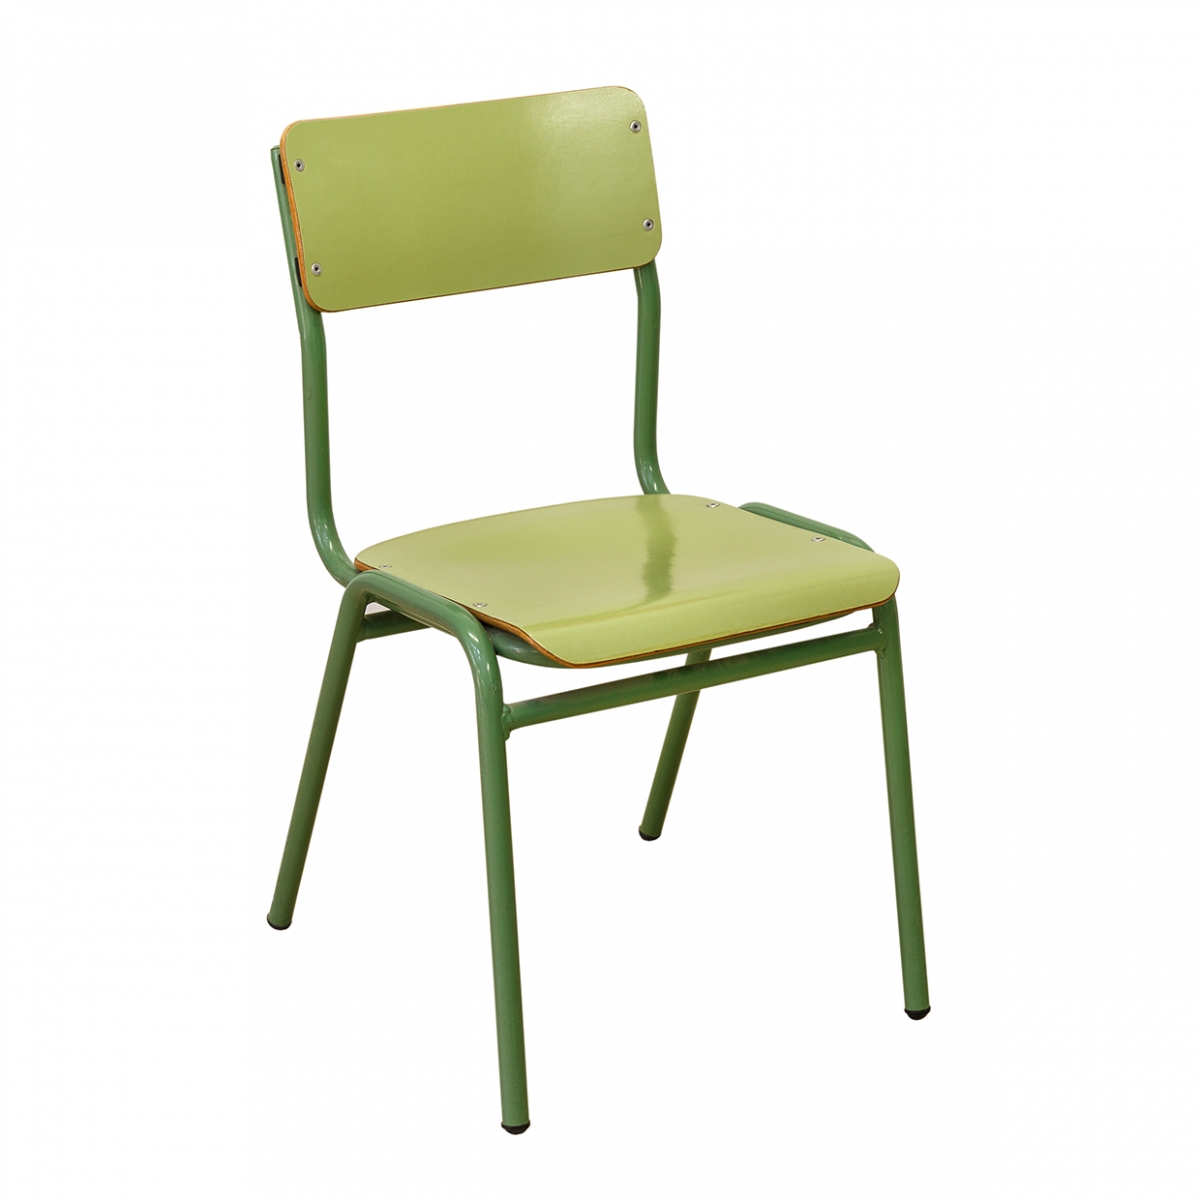 En la imagen aparece una silla verde de colegio